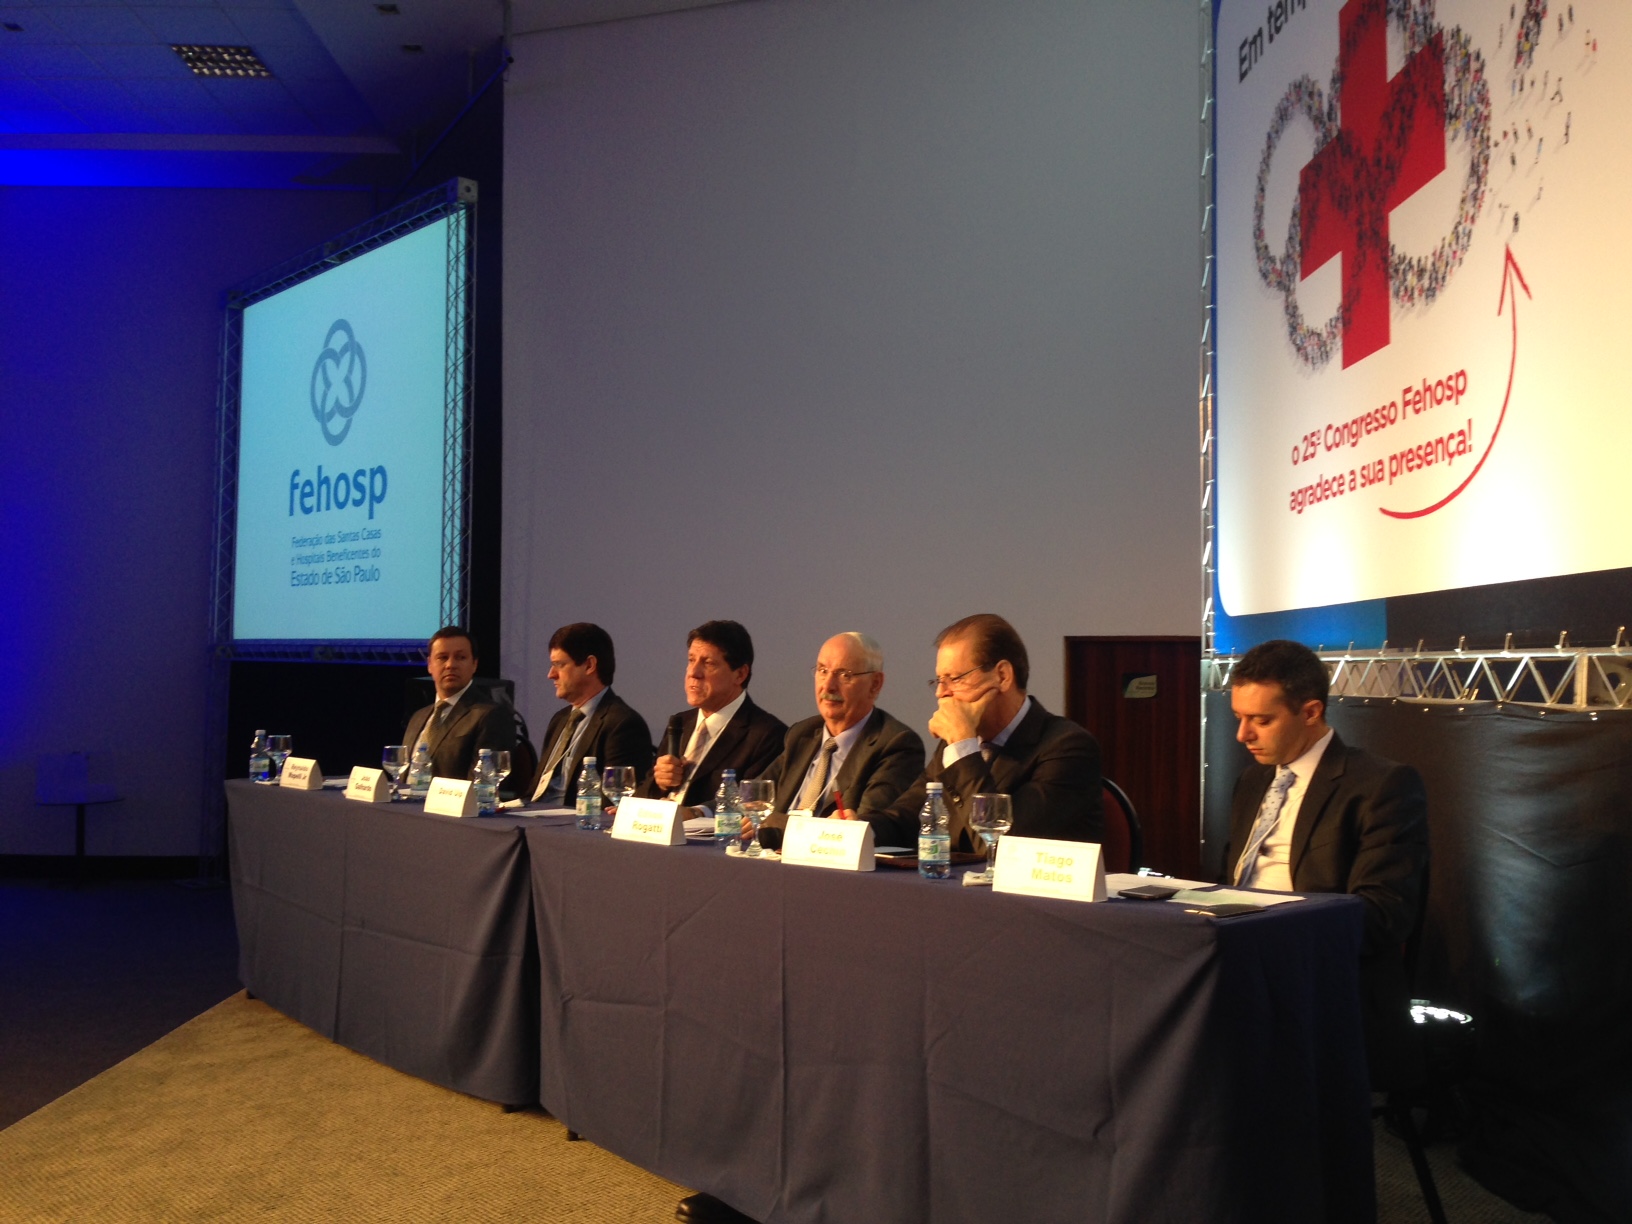 Da esquerda para a direita: Reynaldo Mapelli, Joao Galhardo, David Uip, Edson Rogatti, José Cechin e Tiago Farina